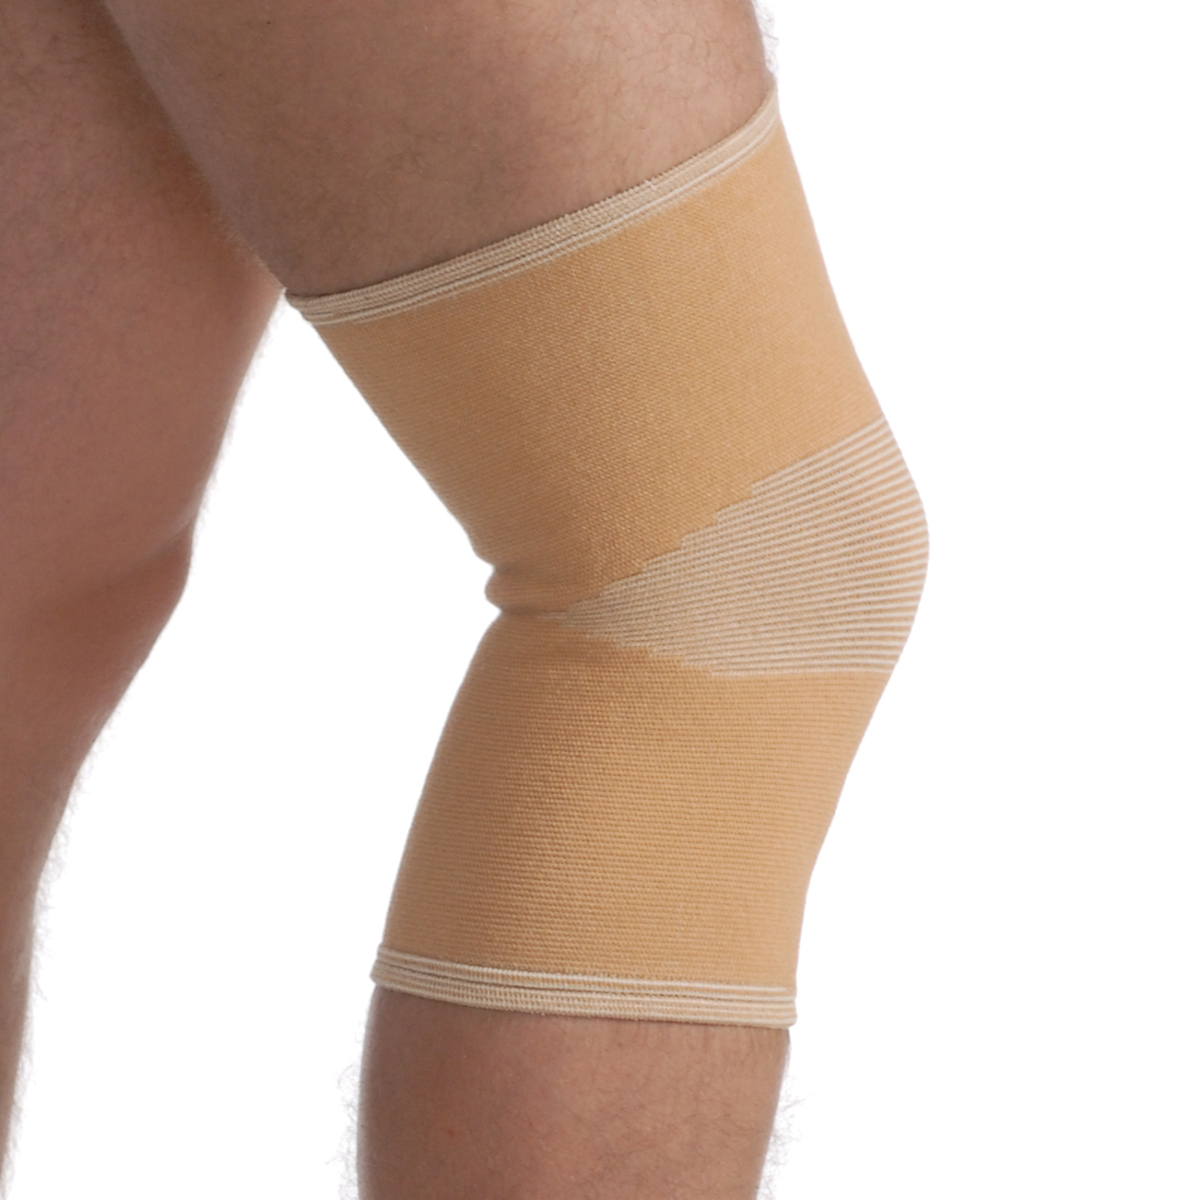 Bandáž kolene elastická béžová, Medtextile, 6002 vel. XL